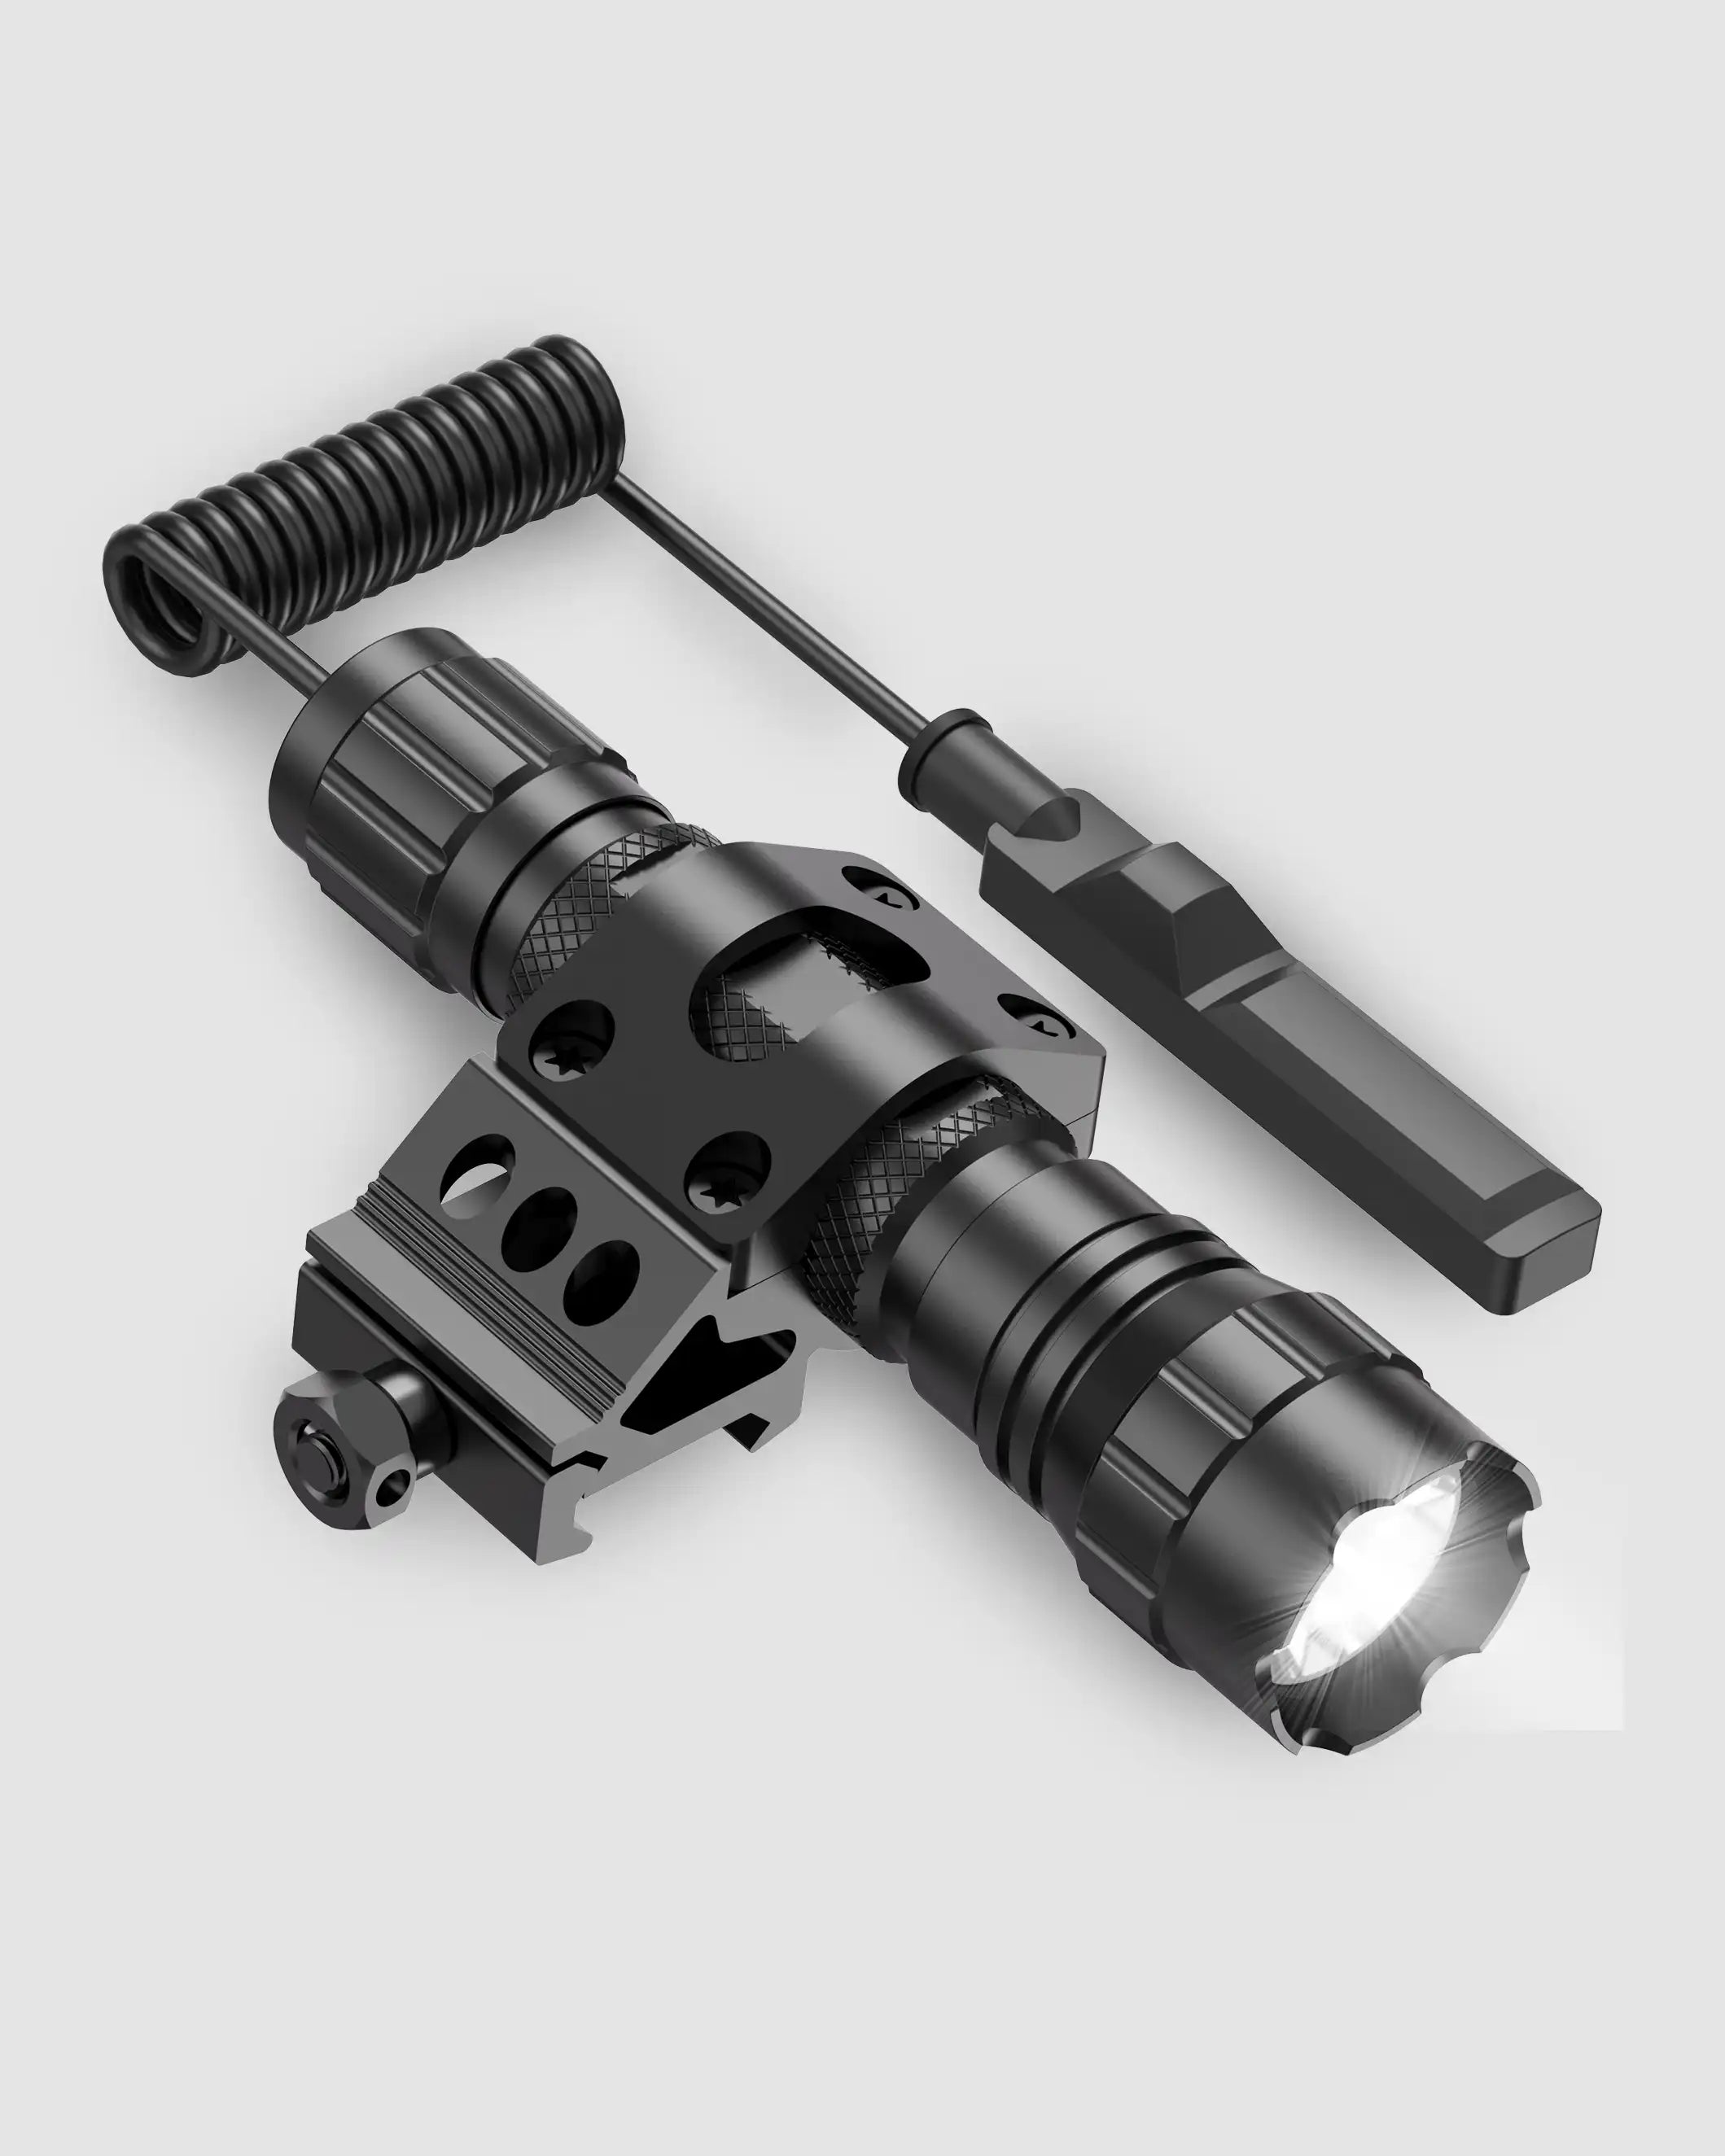 Feyachi FL11-MB Taktische Taschenlampe – 1200 Lumen Picatinny-Halterung